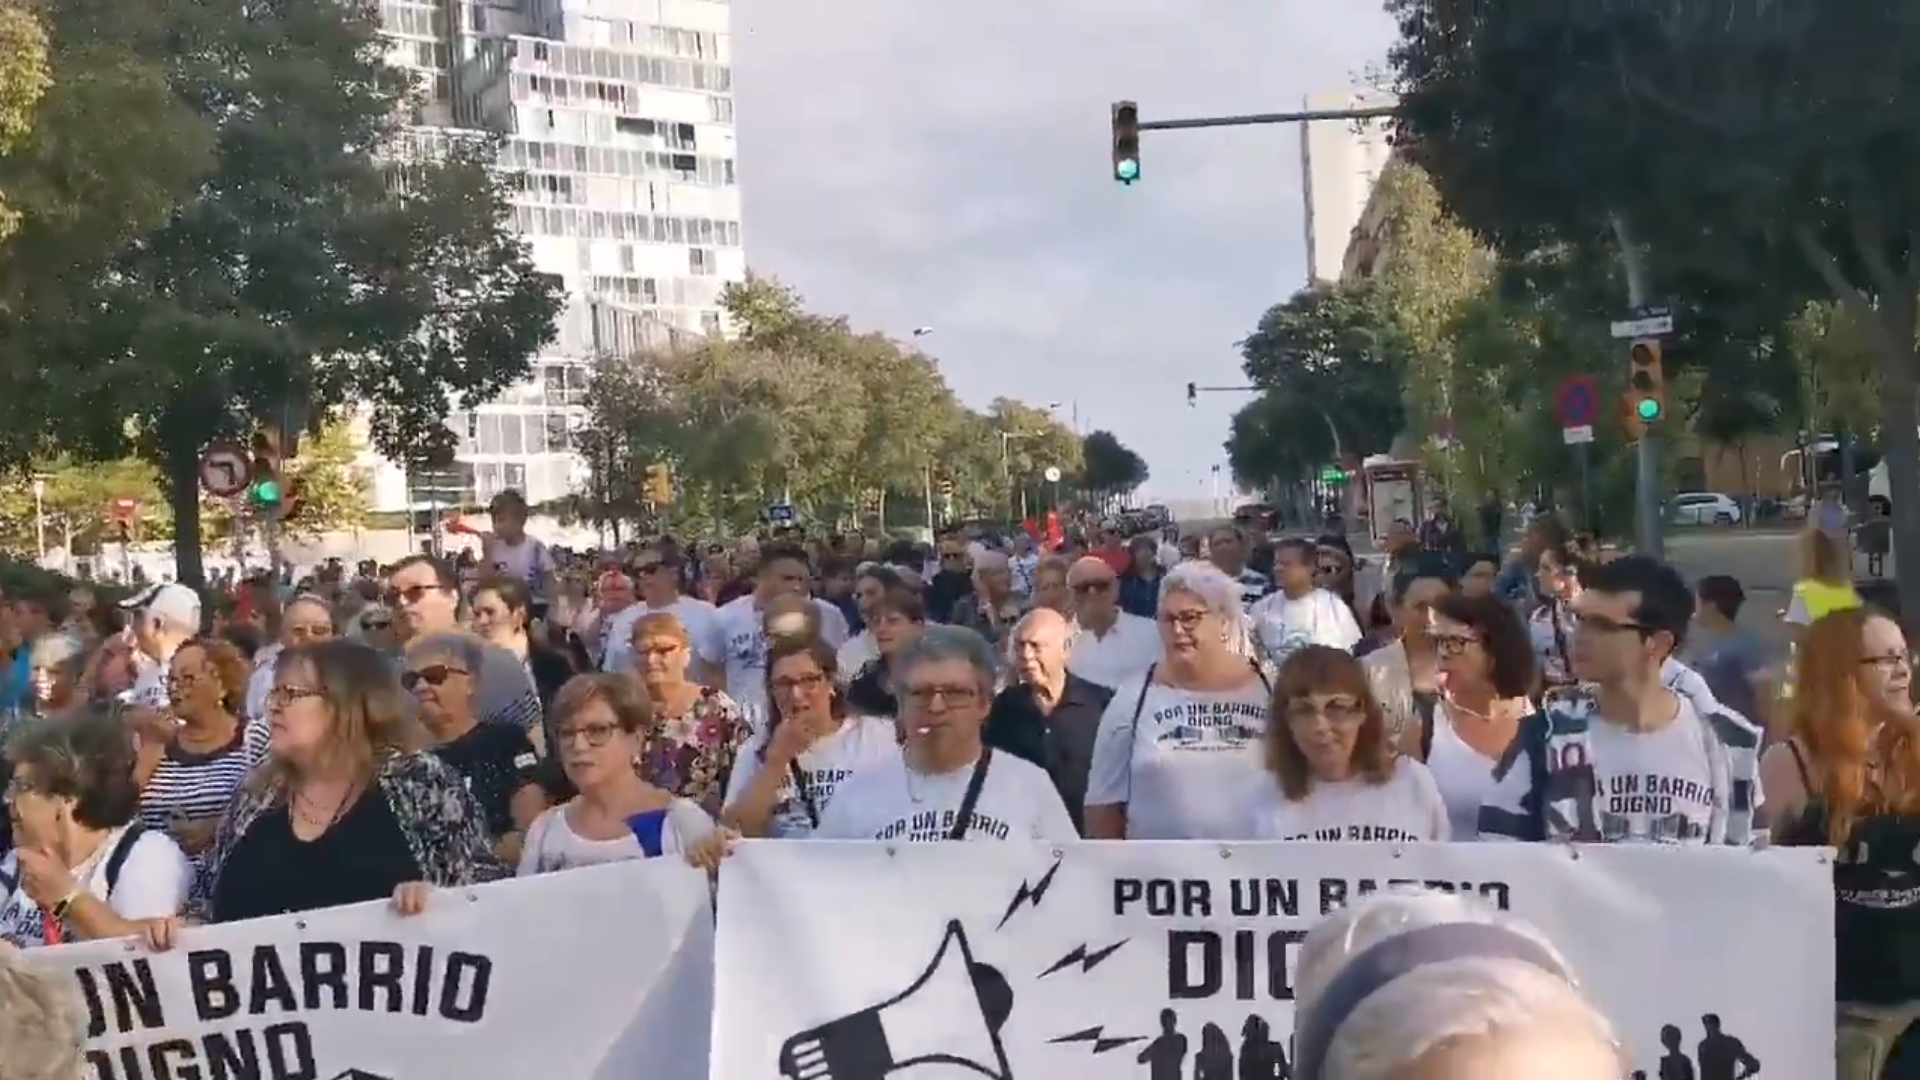 Marcha de 3.000 vecinos del Besòs "por un barrio digno" (y contra dos centros de mena)